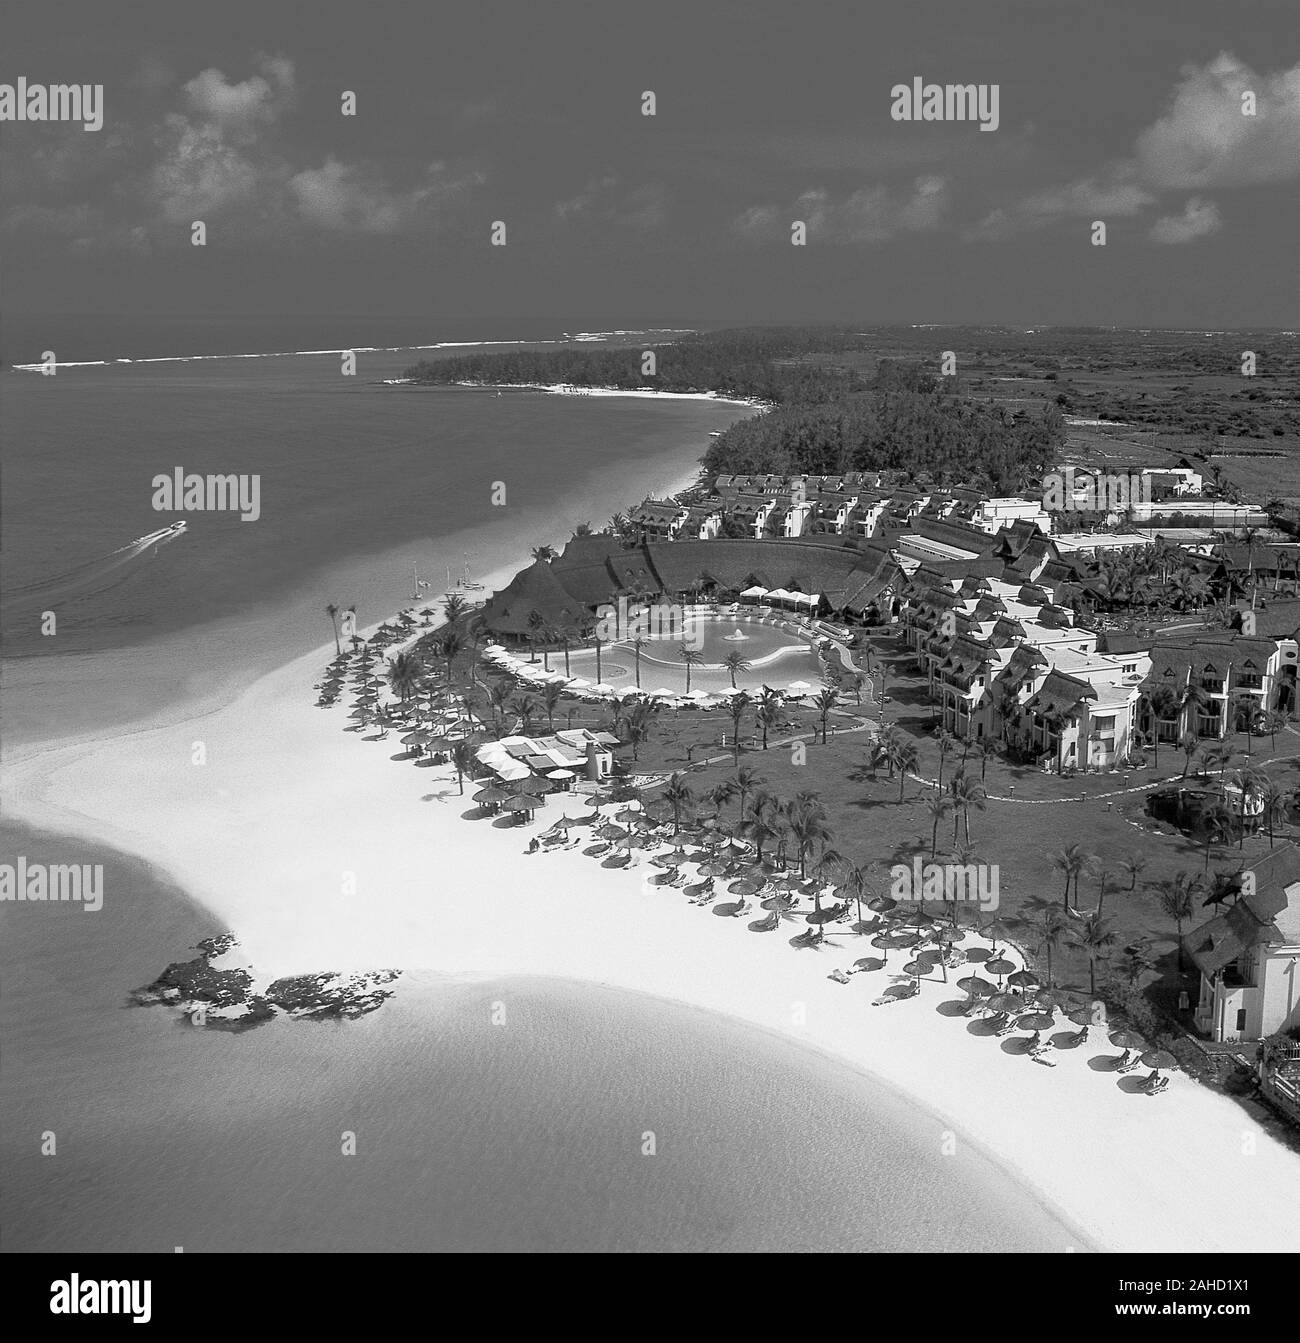 Airshot of Beach-Holidays Luxury Resort on Mauritius Island Stock Photo